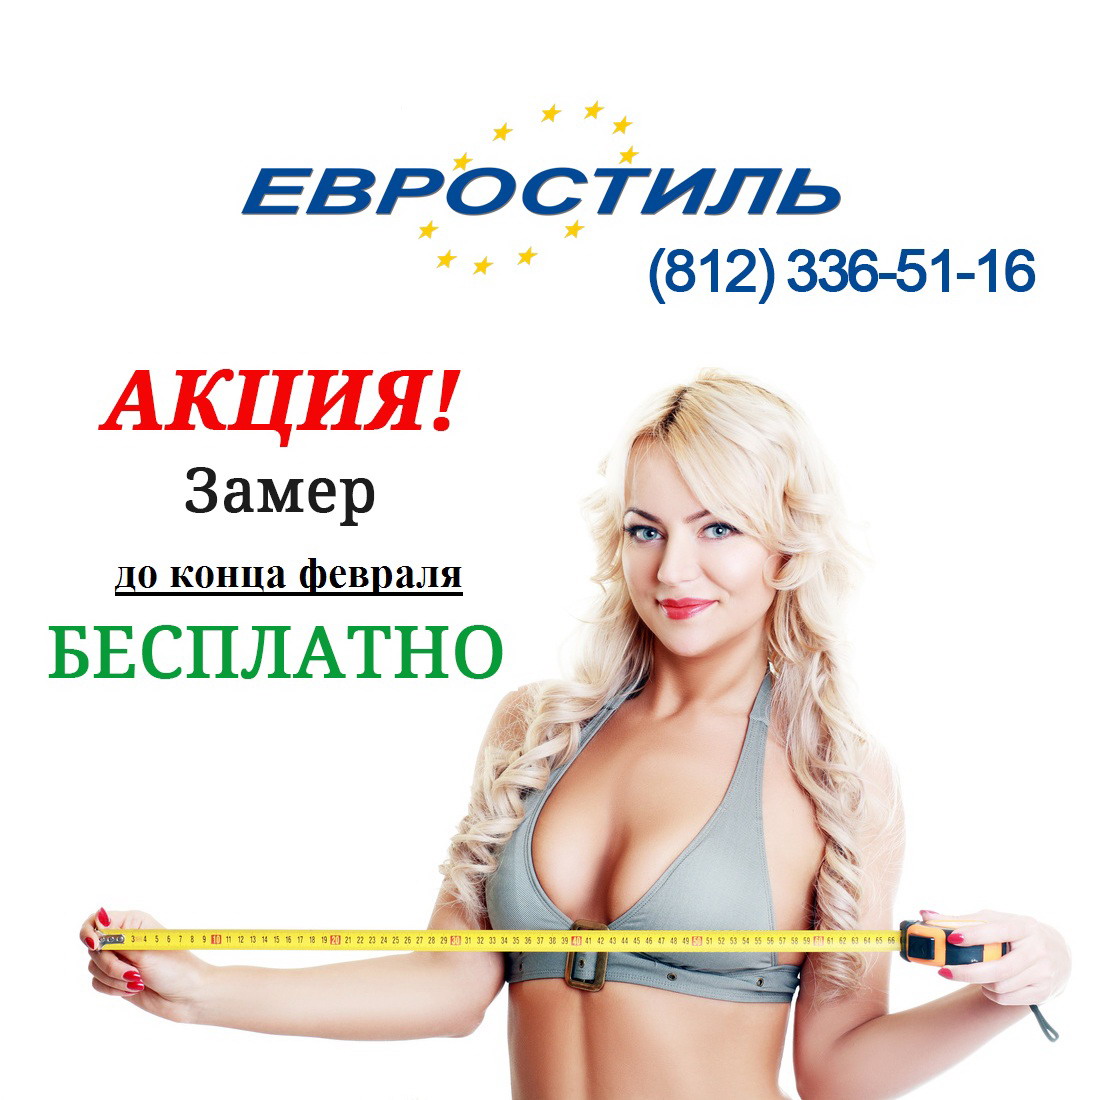 бесплатный выезд замерщика на заказ сантехнических перегородок в Петербурге